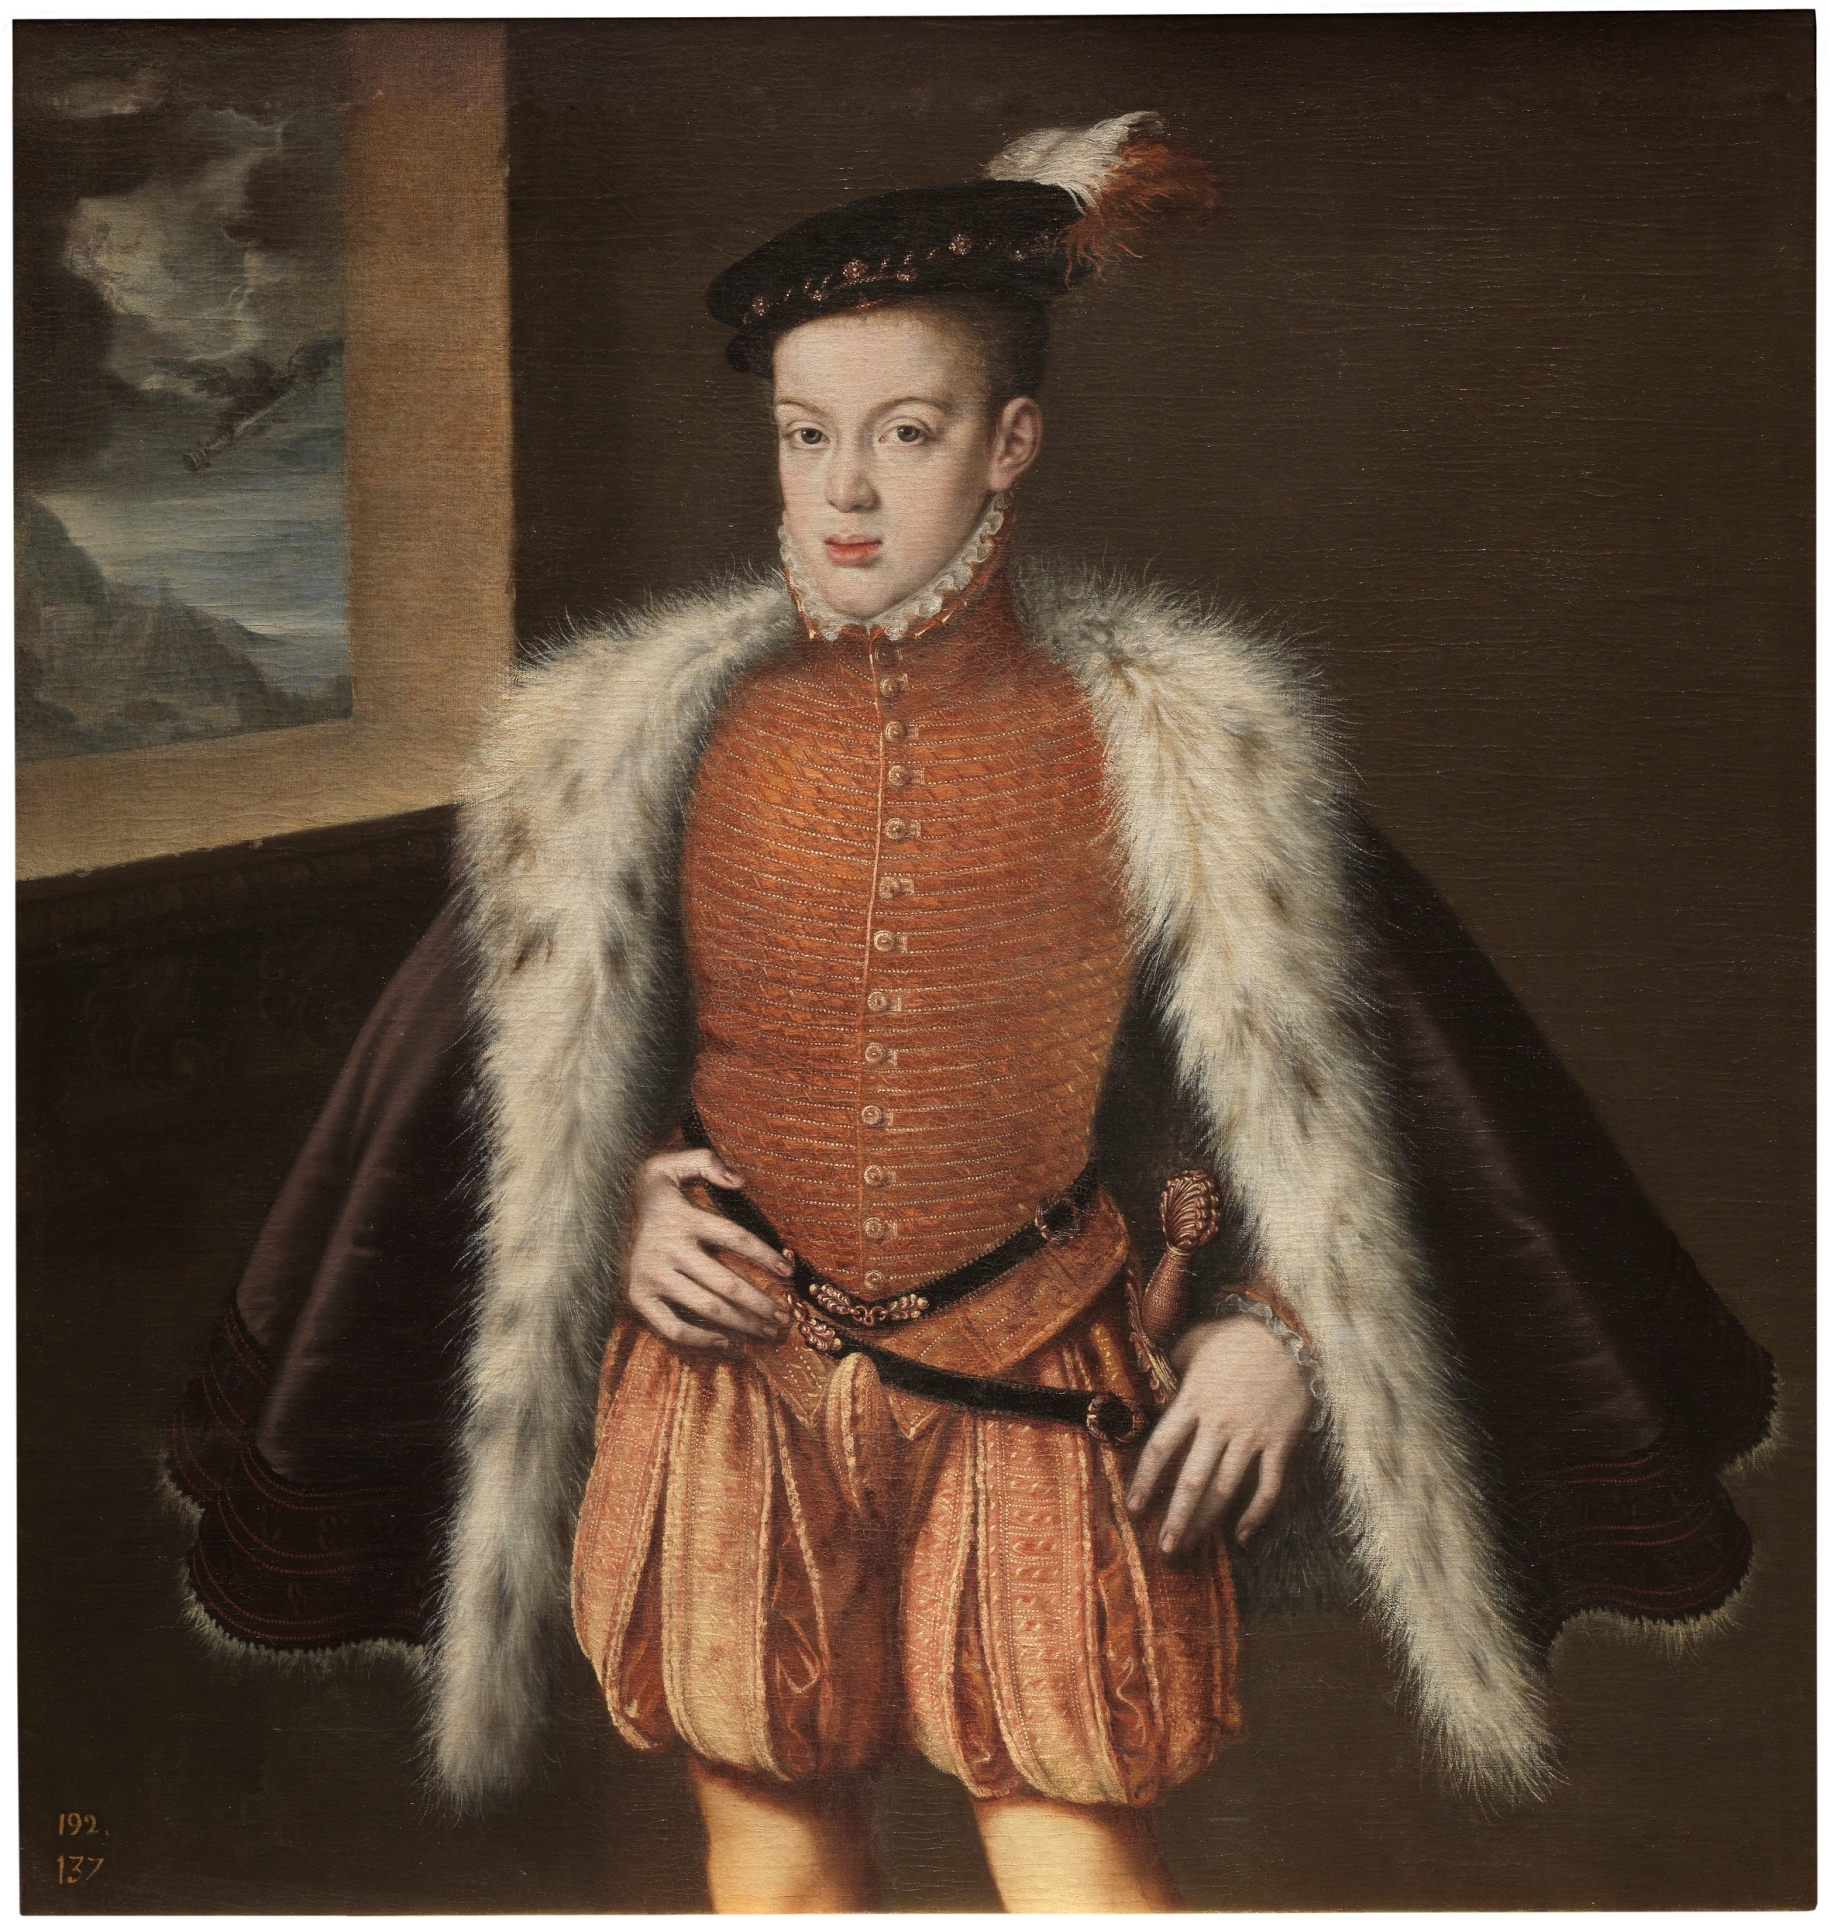 'Prince Don Carlos,' Alonso Sánchez Coello, 1555- 1559. Courtesy of Museo Nacional del Prado.